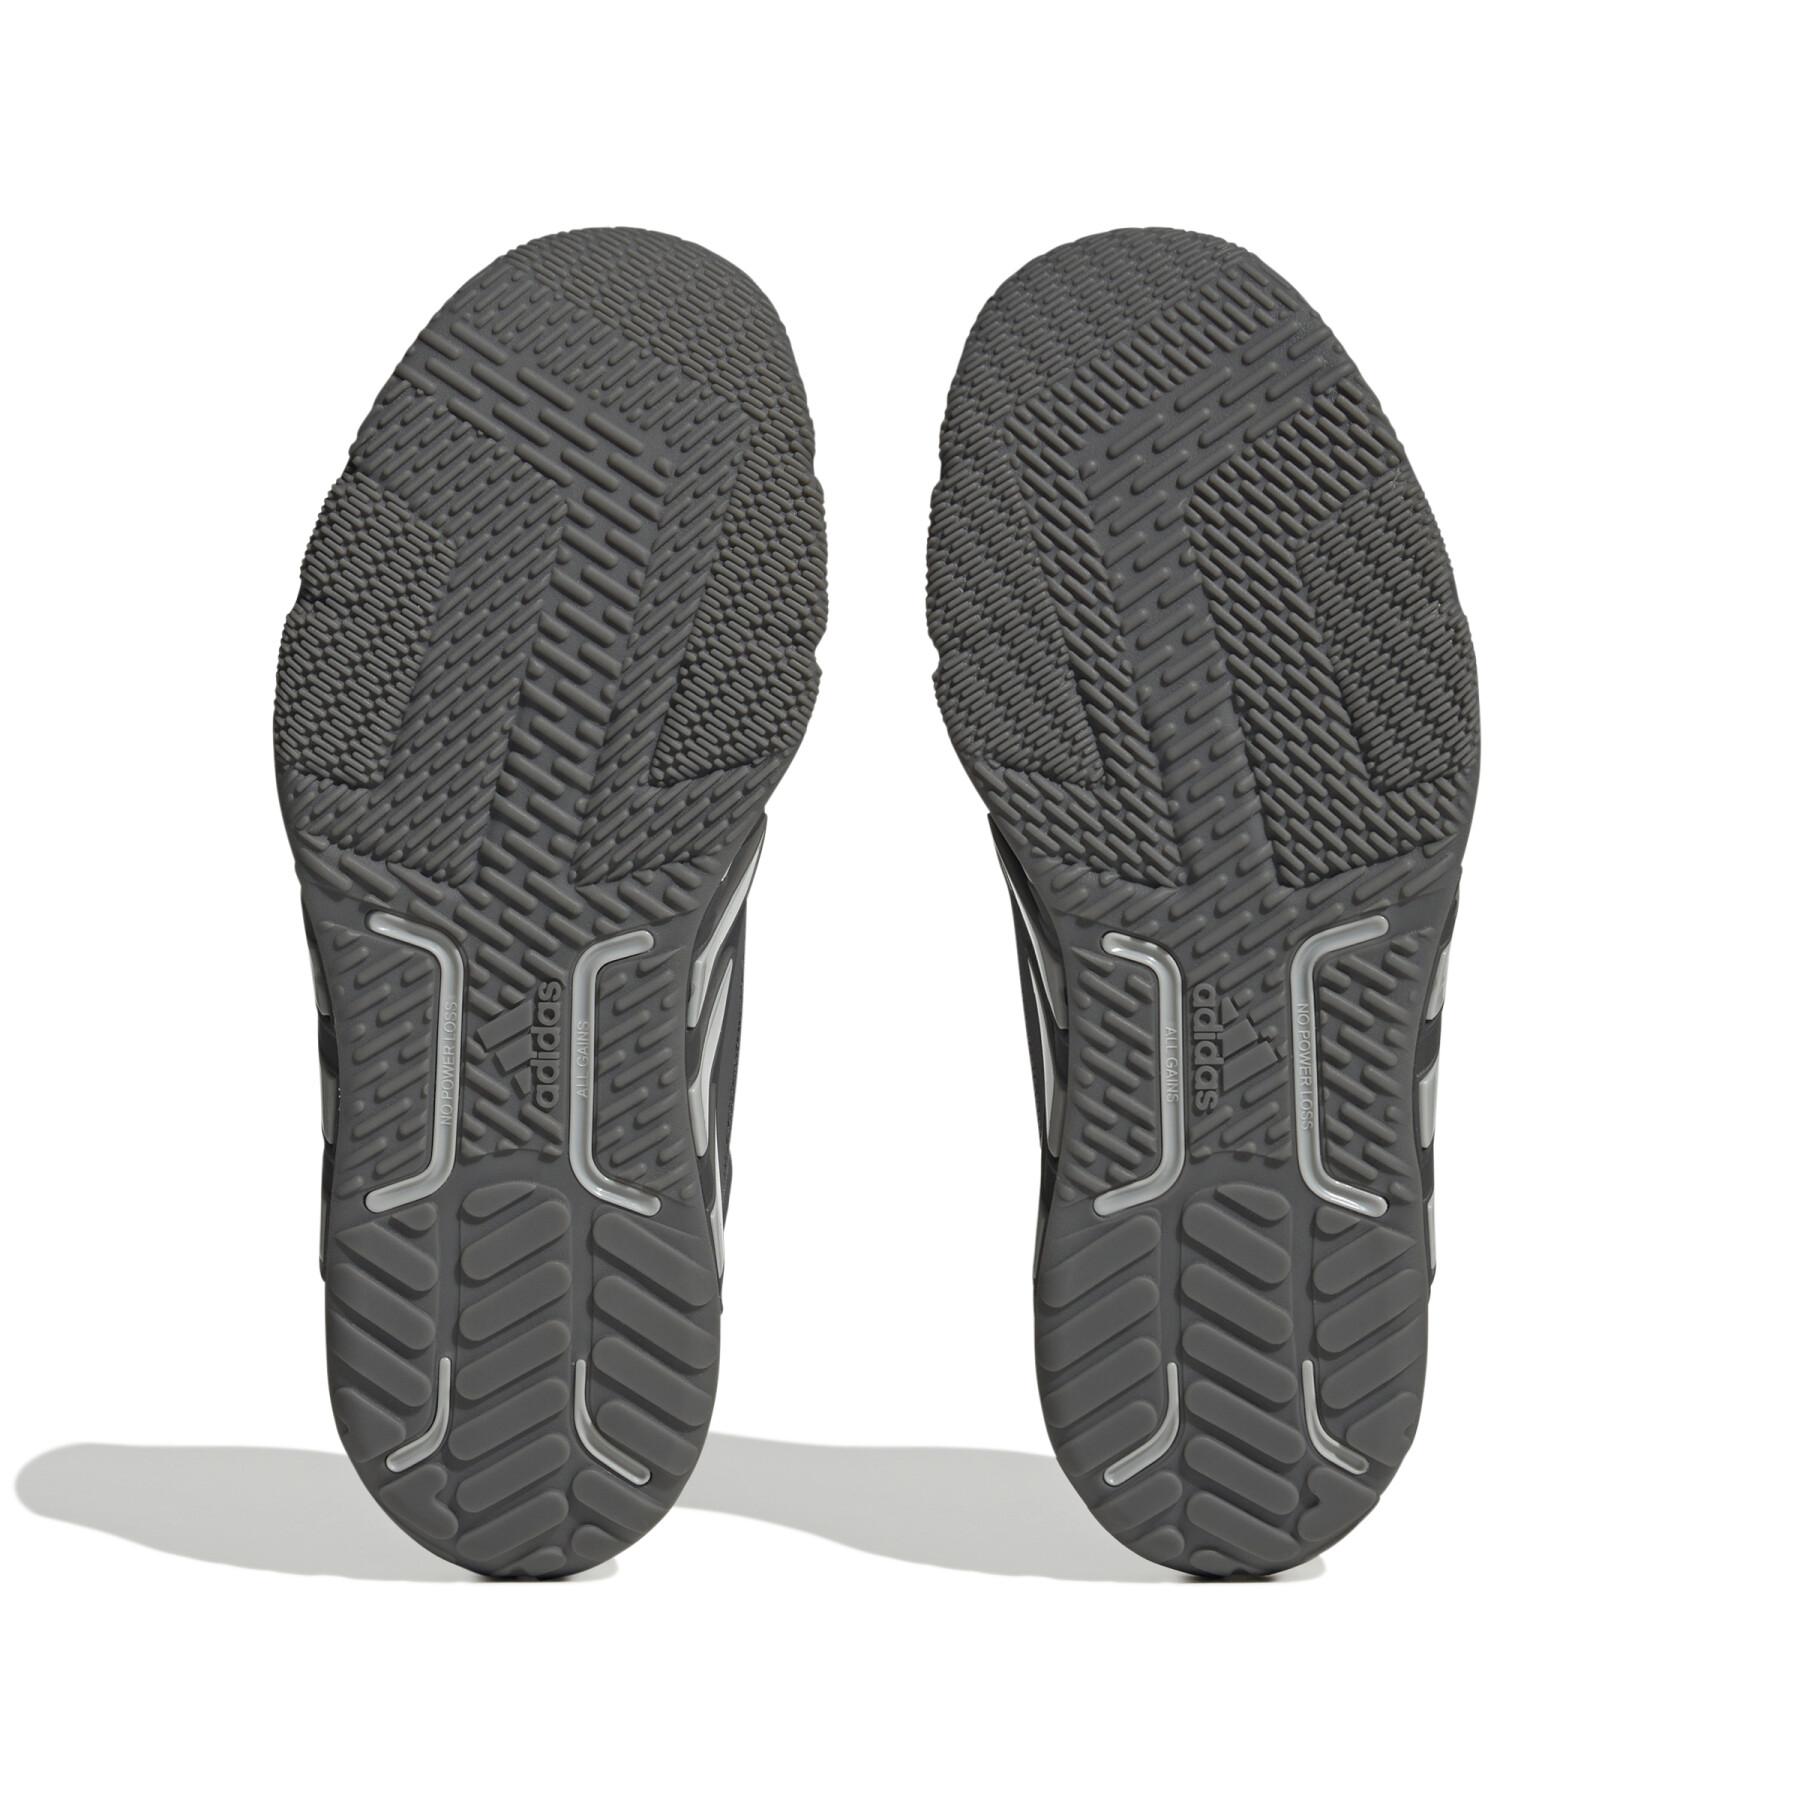 Zapatillas de cross training adidas Dropset